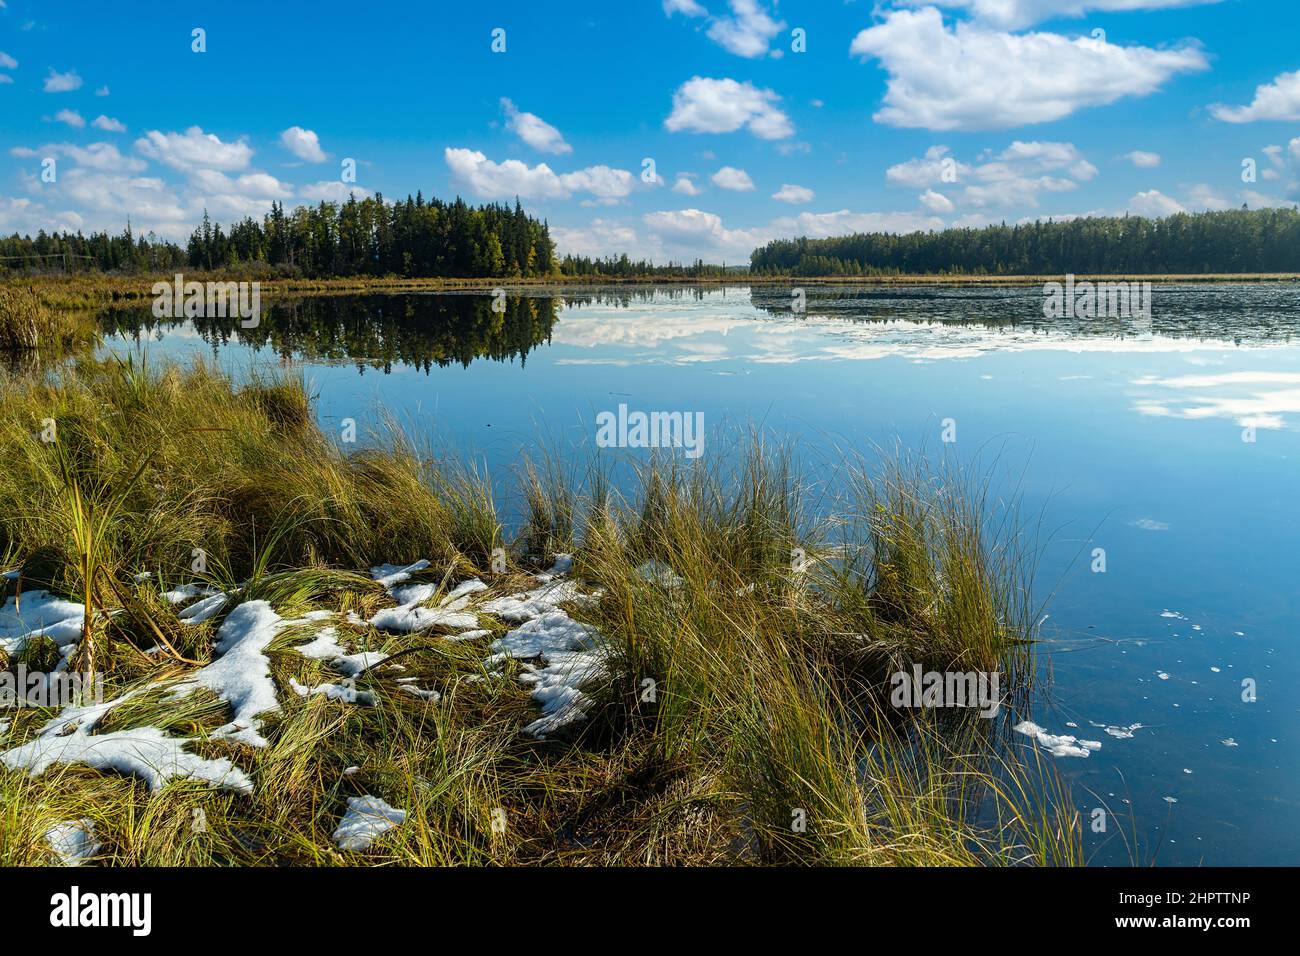 Vista desde una costa pantanosa de un lago de principios de invierno. Foto de stock